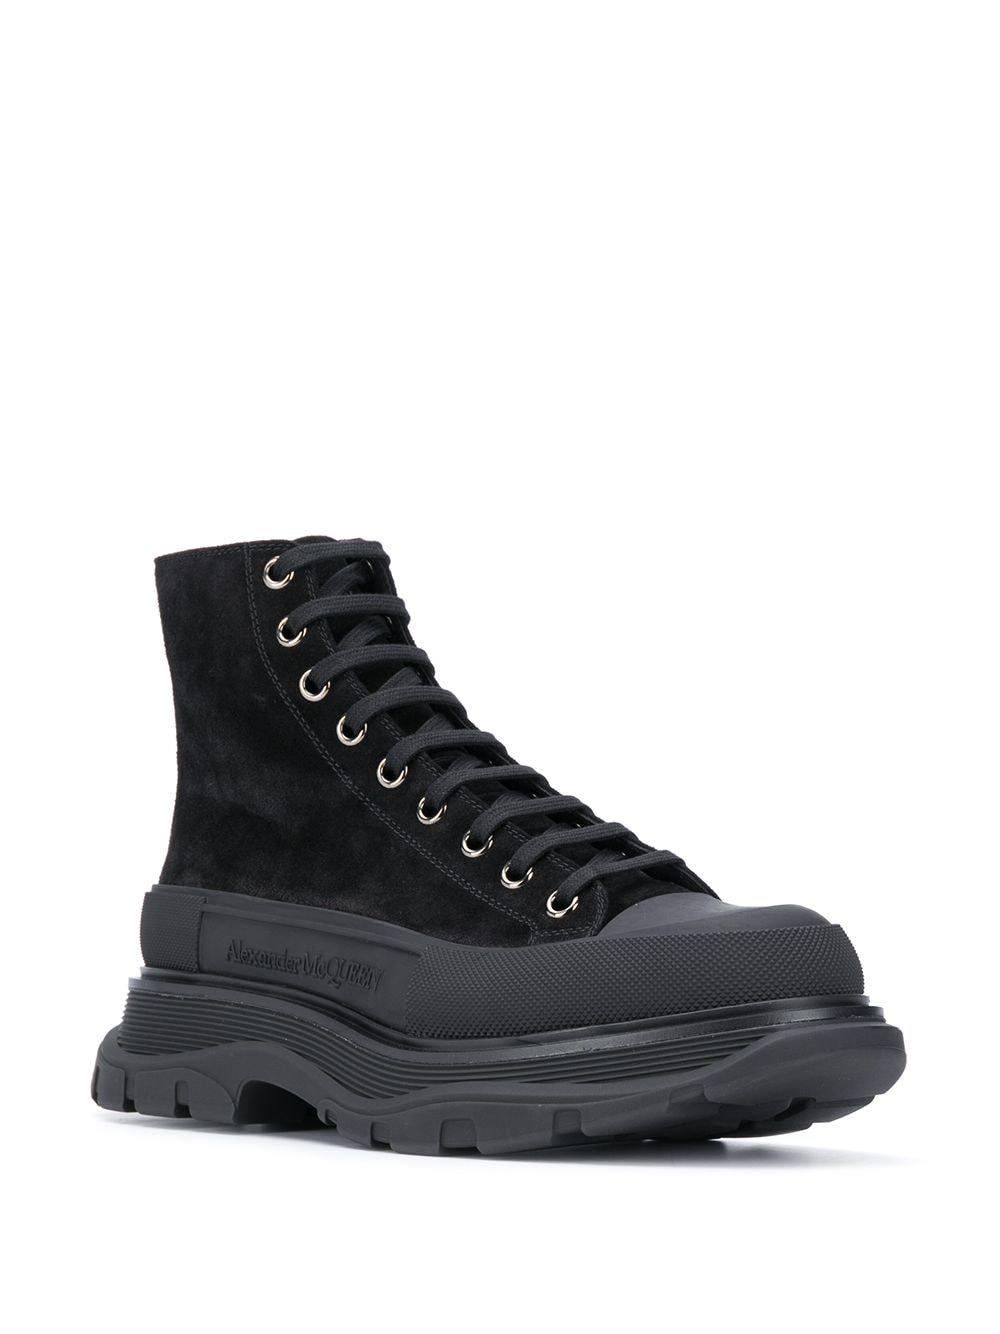 Alexander McQueen Tread Slick Boots in Black for Men - Lyst